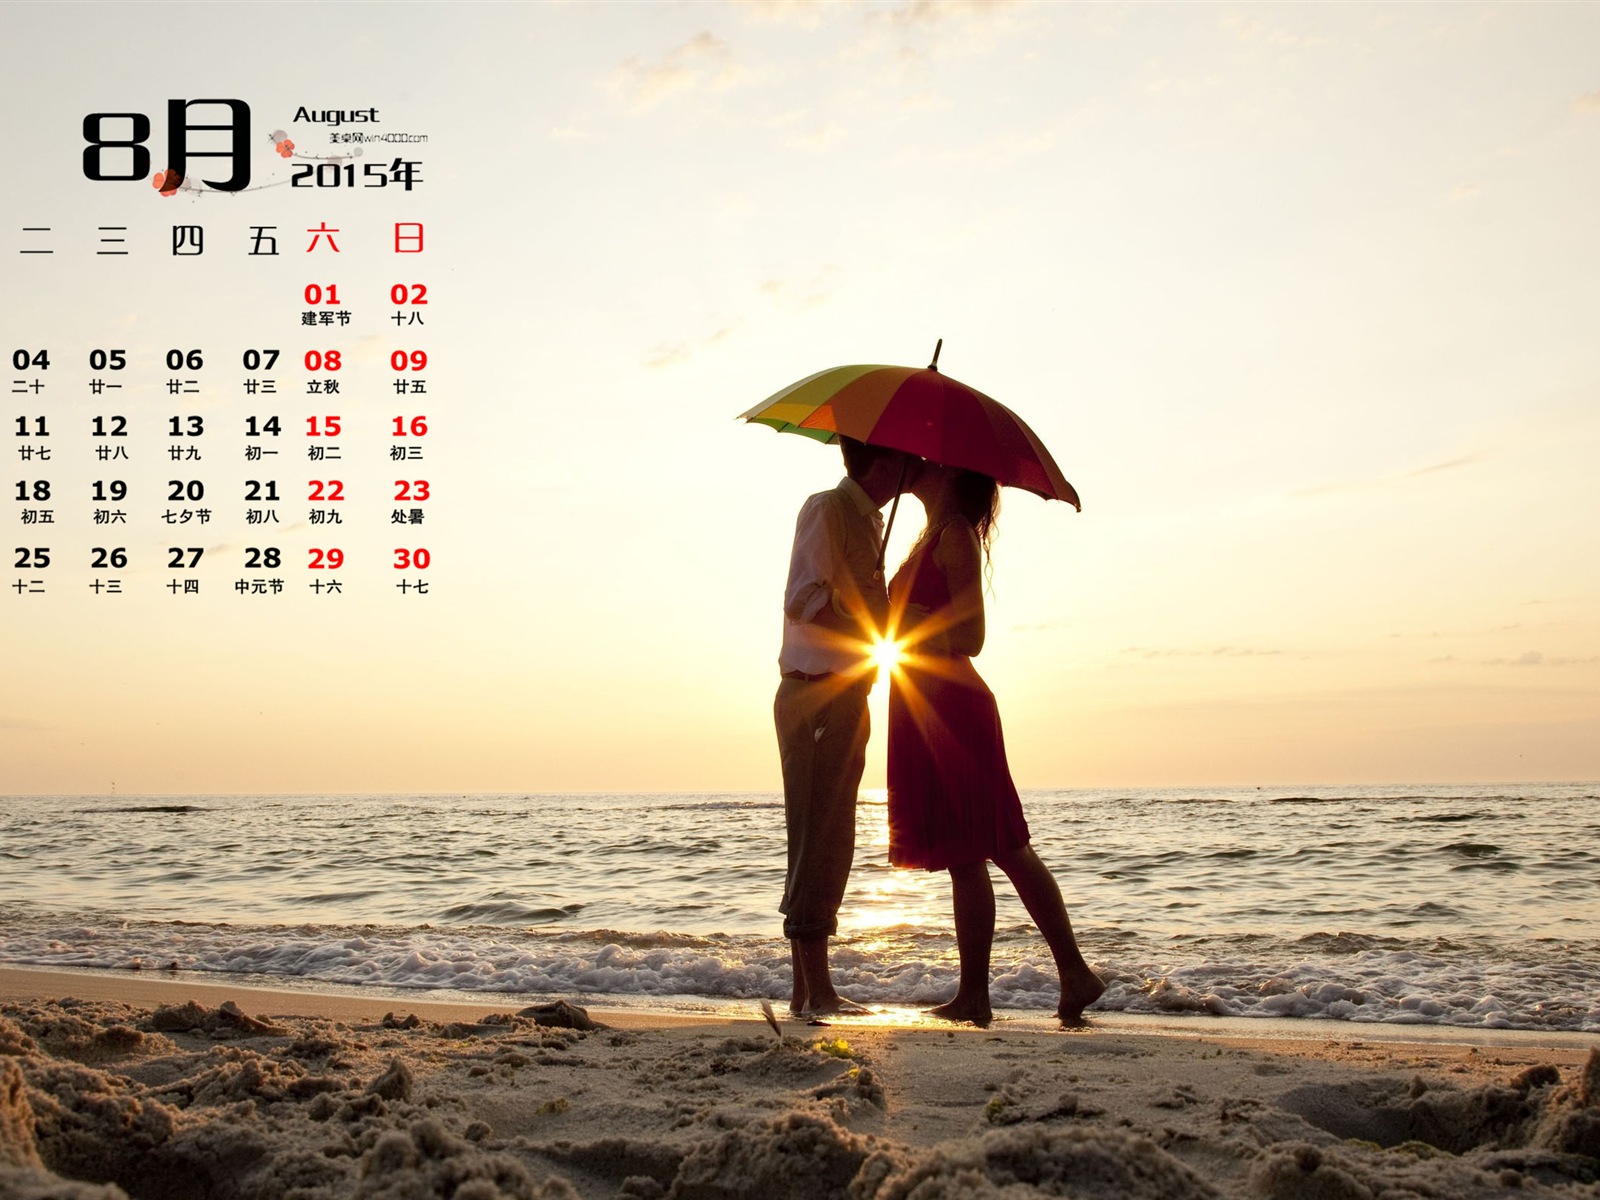 August 2015 Kalender Wallpaper (1) #14 - 1600x1200